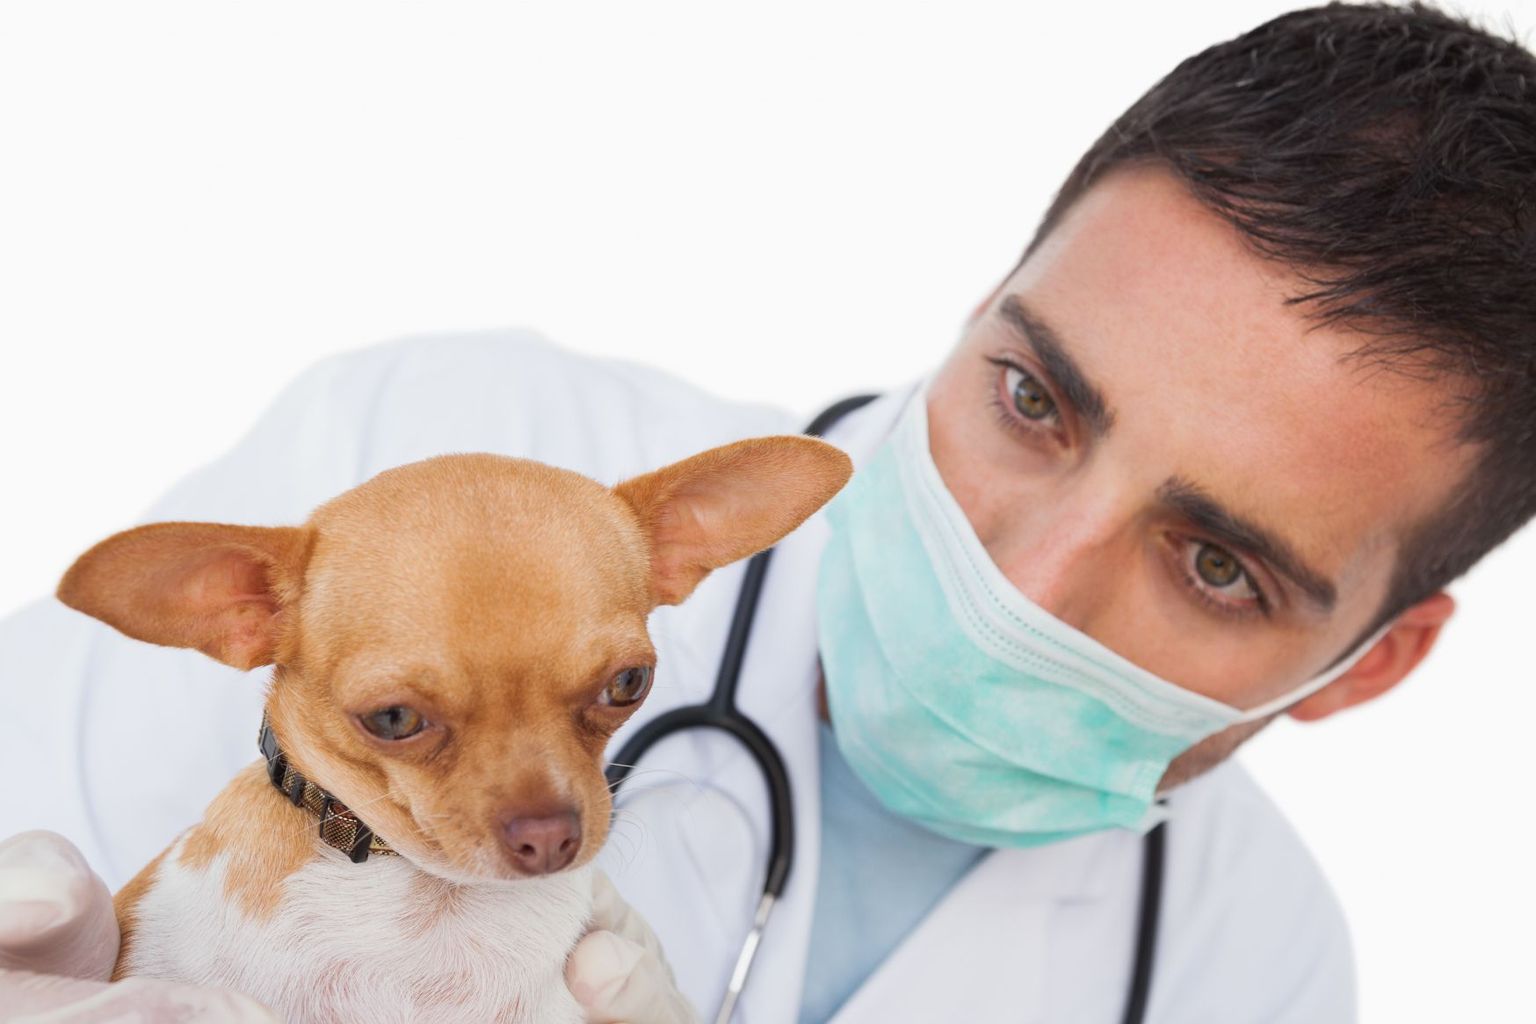 Kui lemmik on haige, tuleb kontakteeruda loomaarstiga. Lemmikule ei tohi manustada inimestele mõeldud ravimeid.